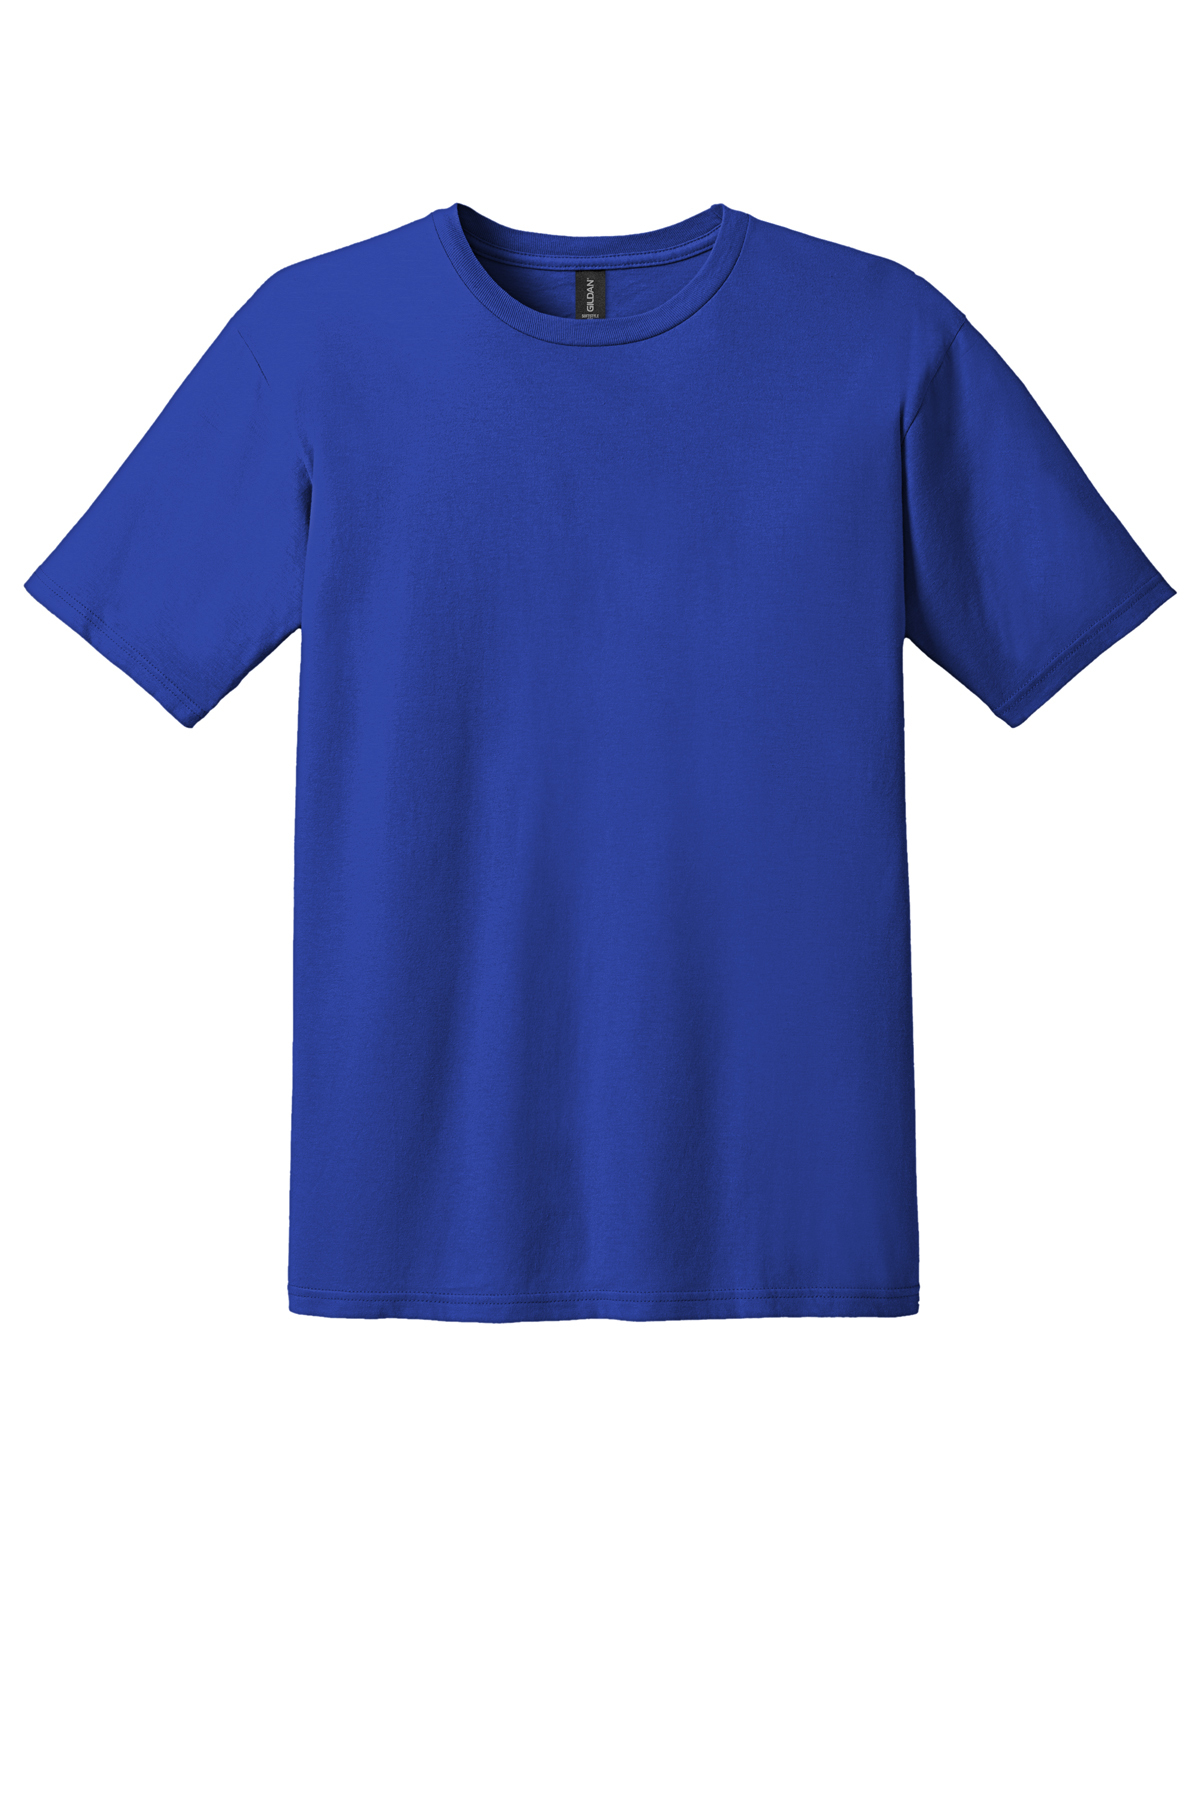 GILDAN damen NEU 25 farben T-Shirt 'Fitted Ring Spun' jersey 